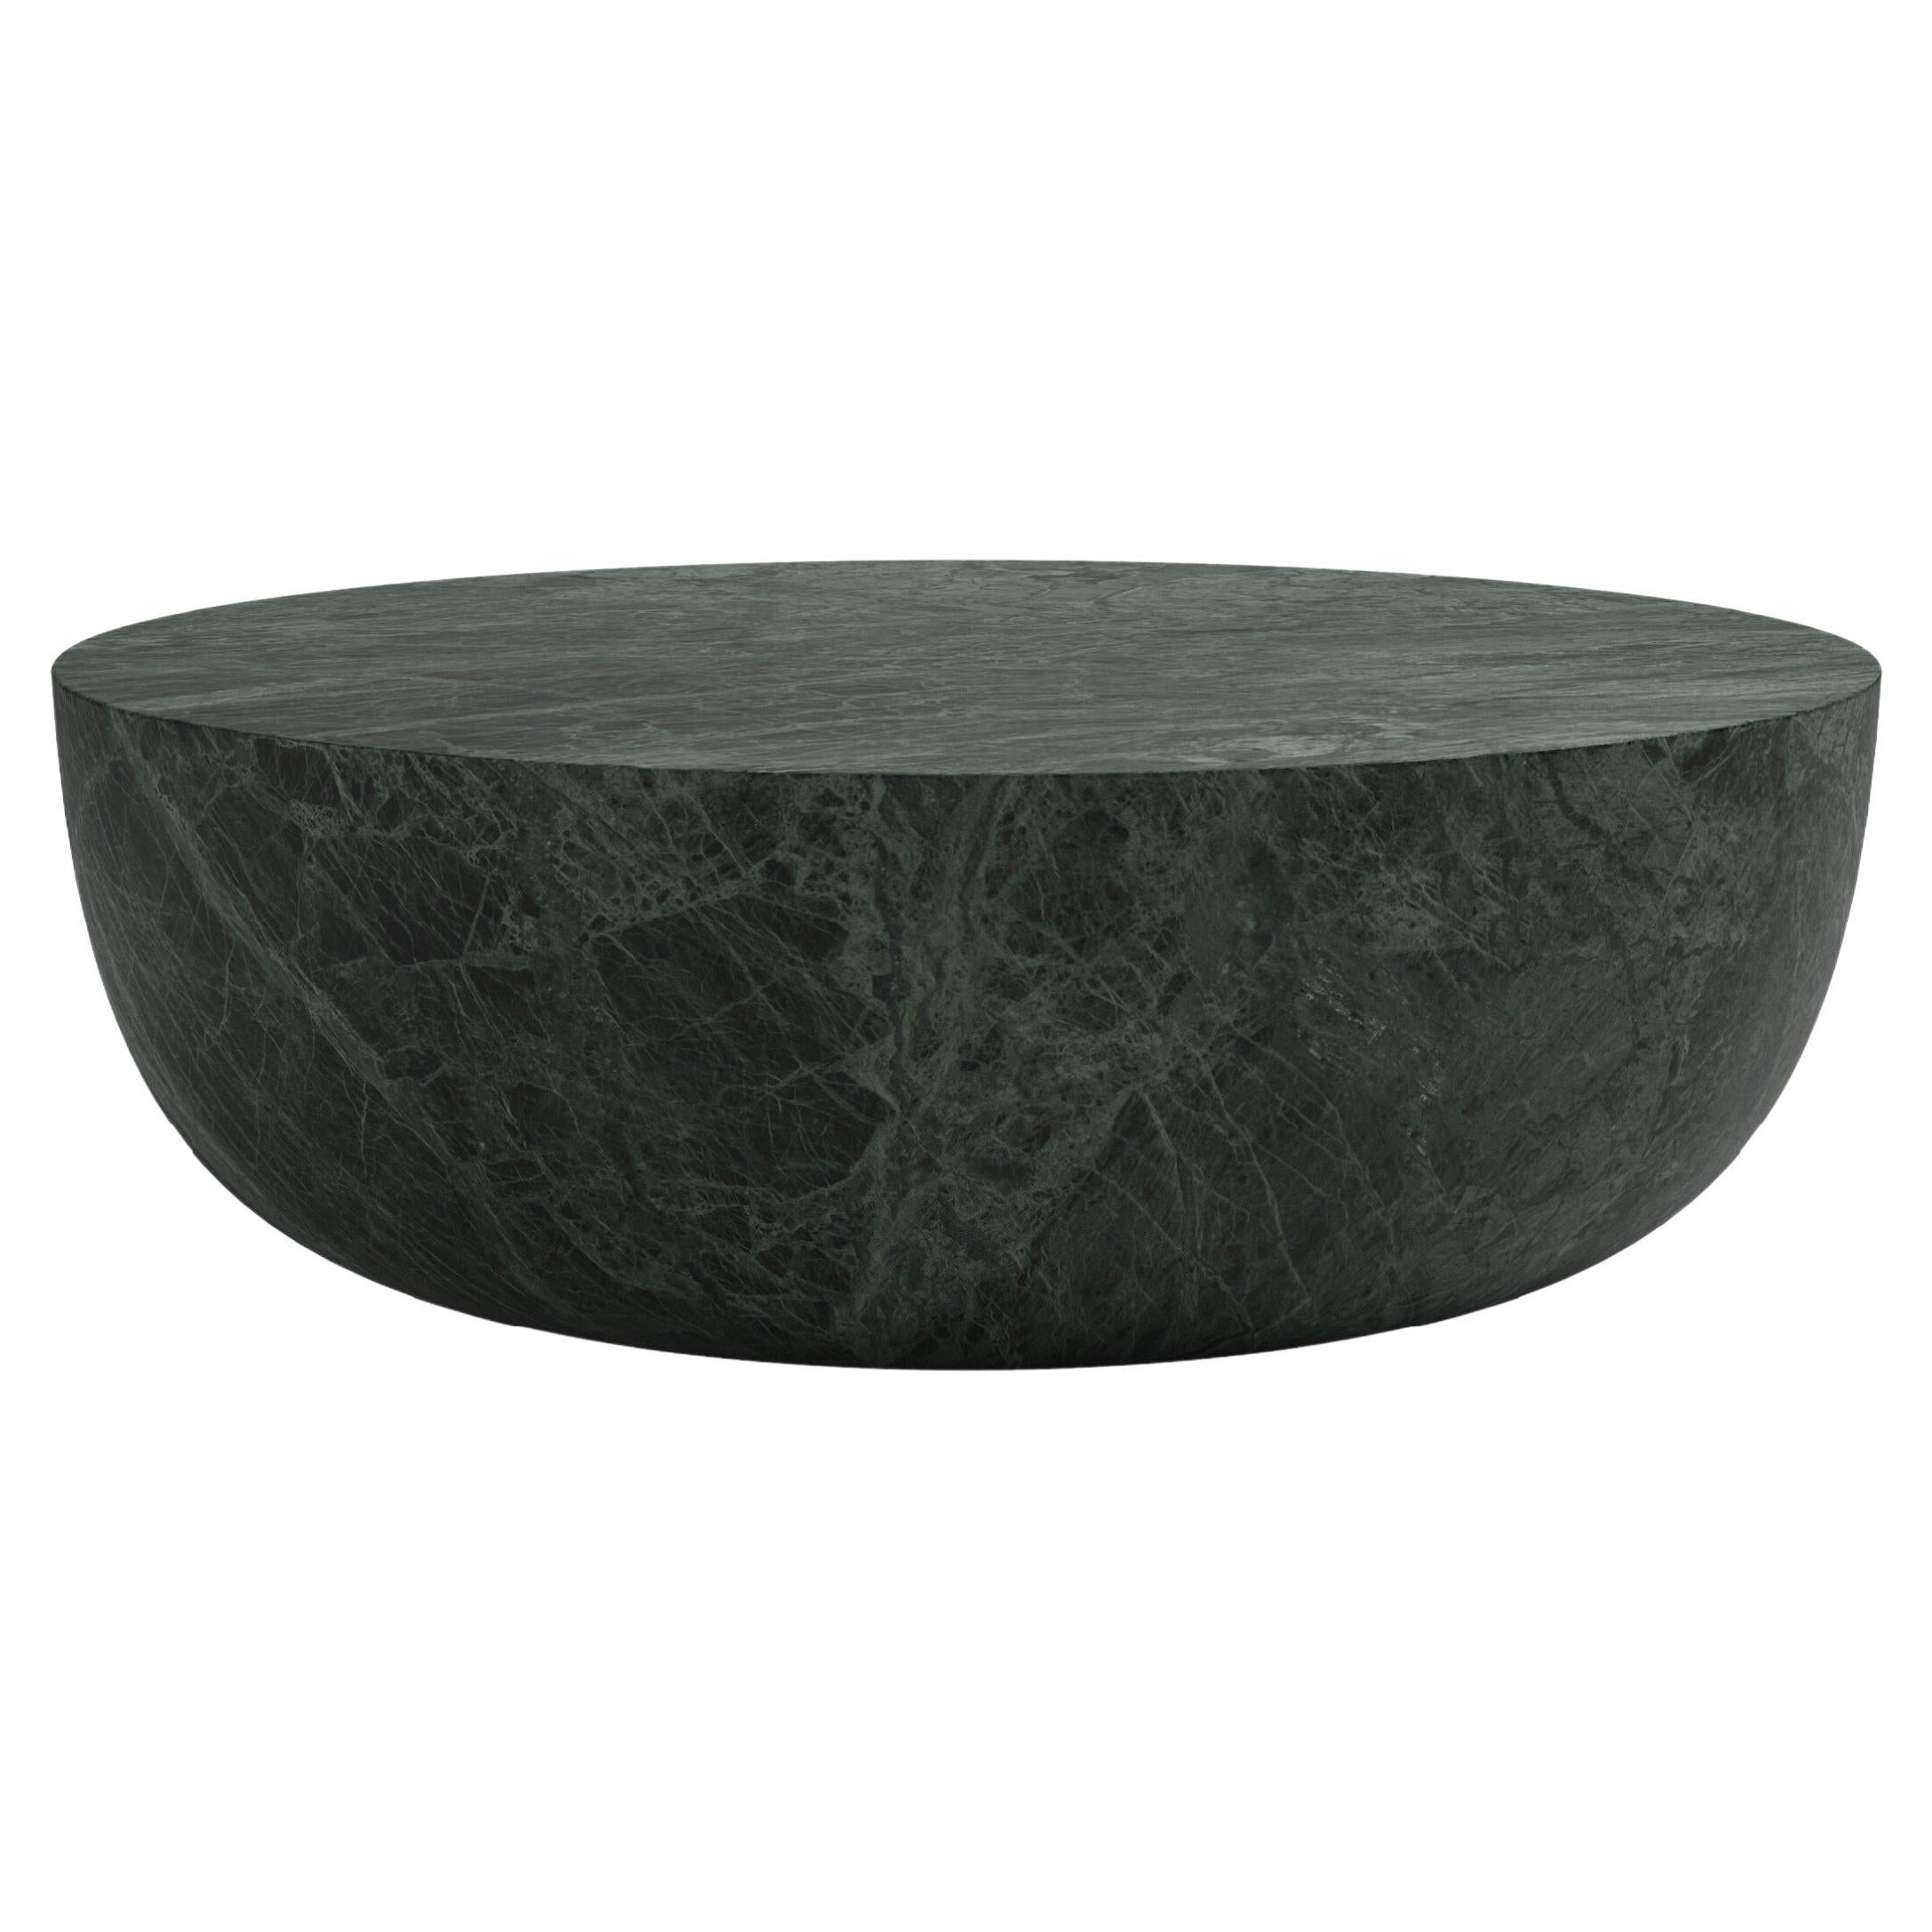 FORM(LA) Sfera Round Coffee Table 36”L x 36”W x 16”H Verde Guatemala Marble